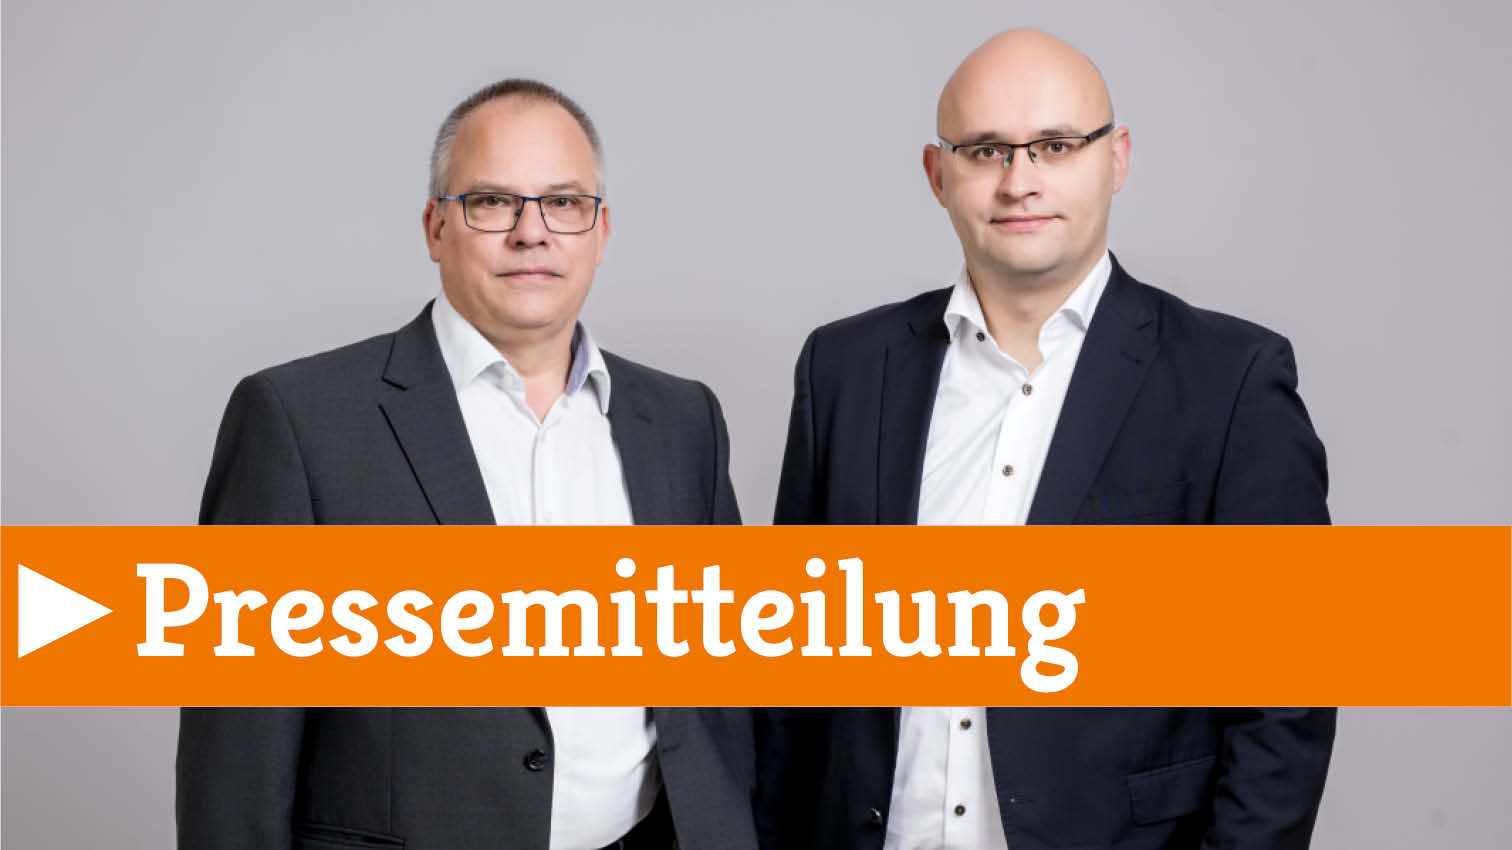 Hans Martin Wollenberg und Andreas Hammerschmidt kommentieren die Eckpunkte zur Krankenhausreform.